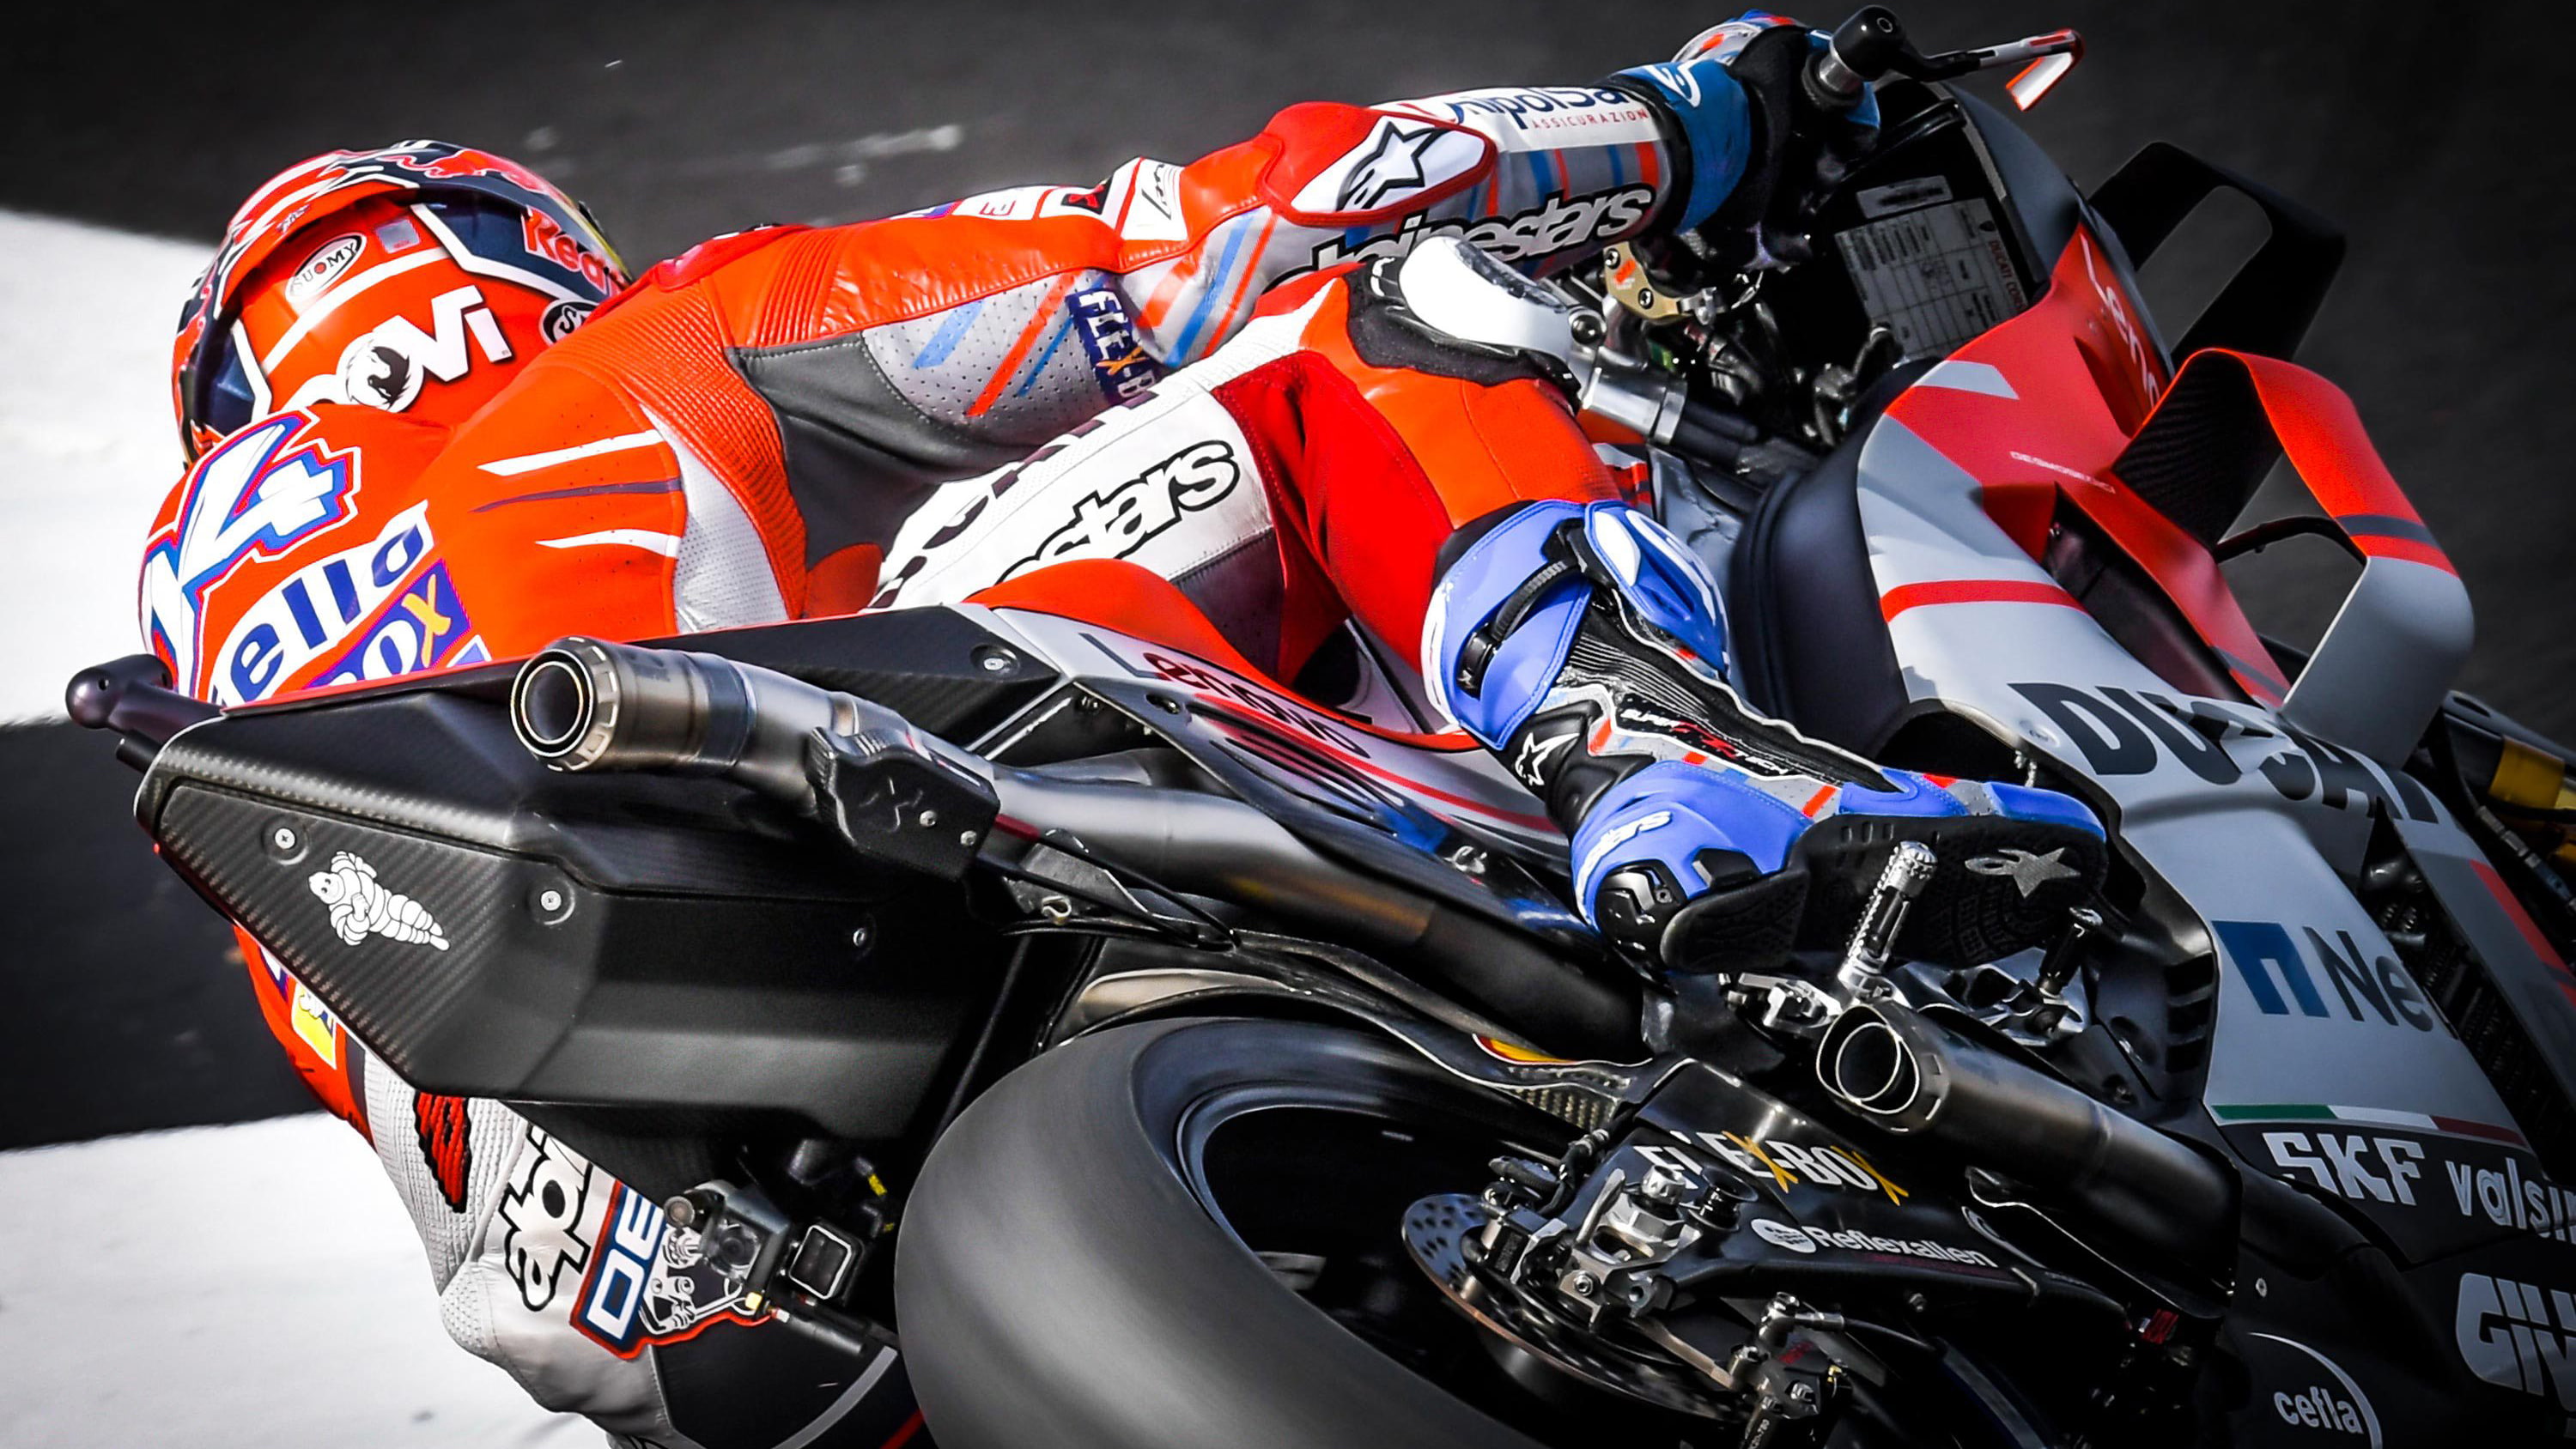 Andrea Dovizioso Ducati Corse Silverstone MotoGP 2018, sport